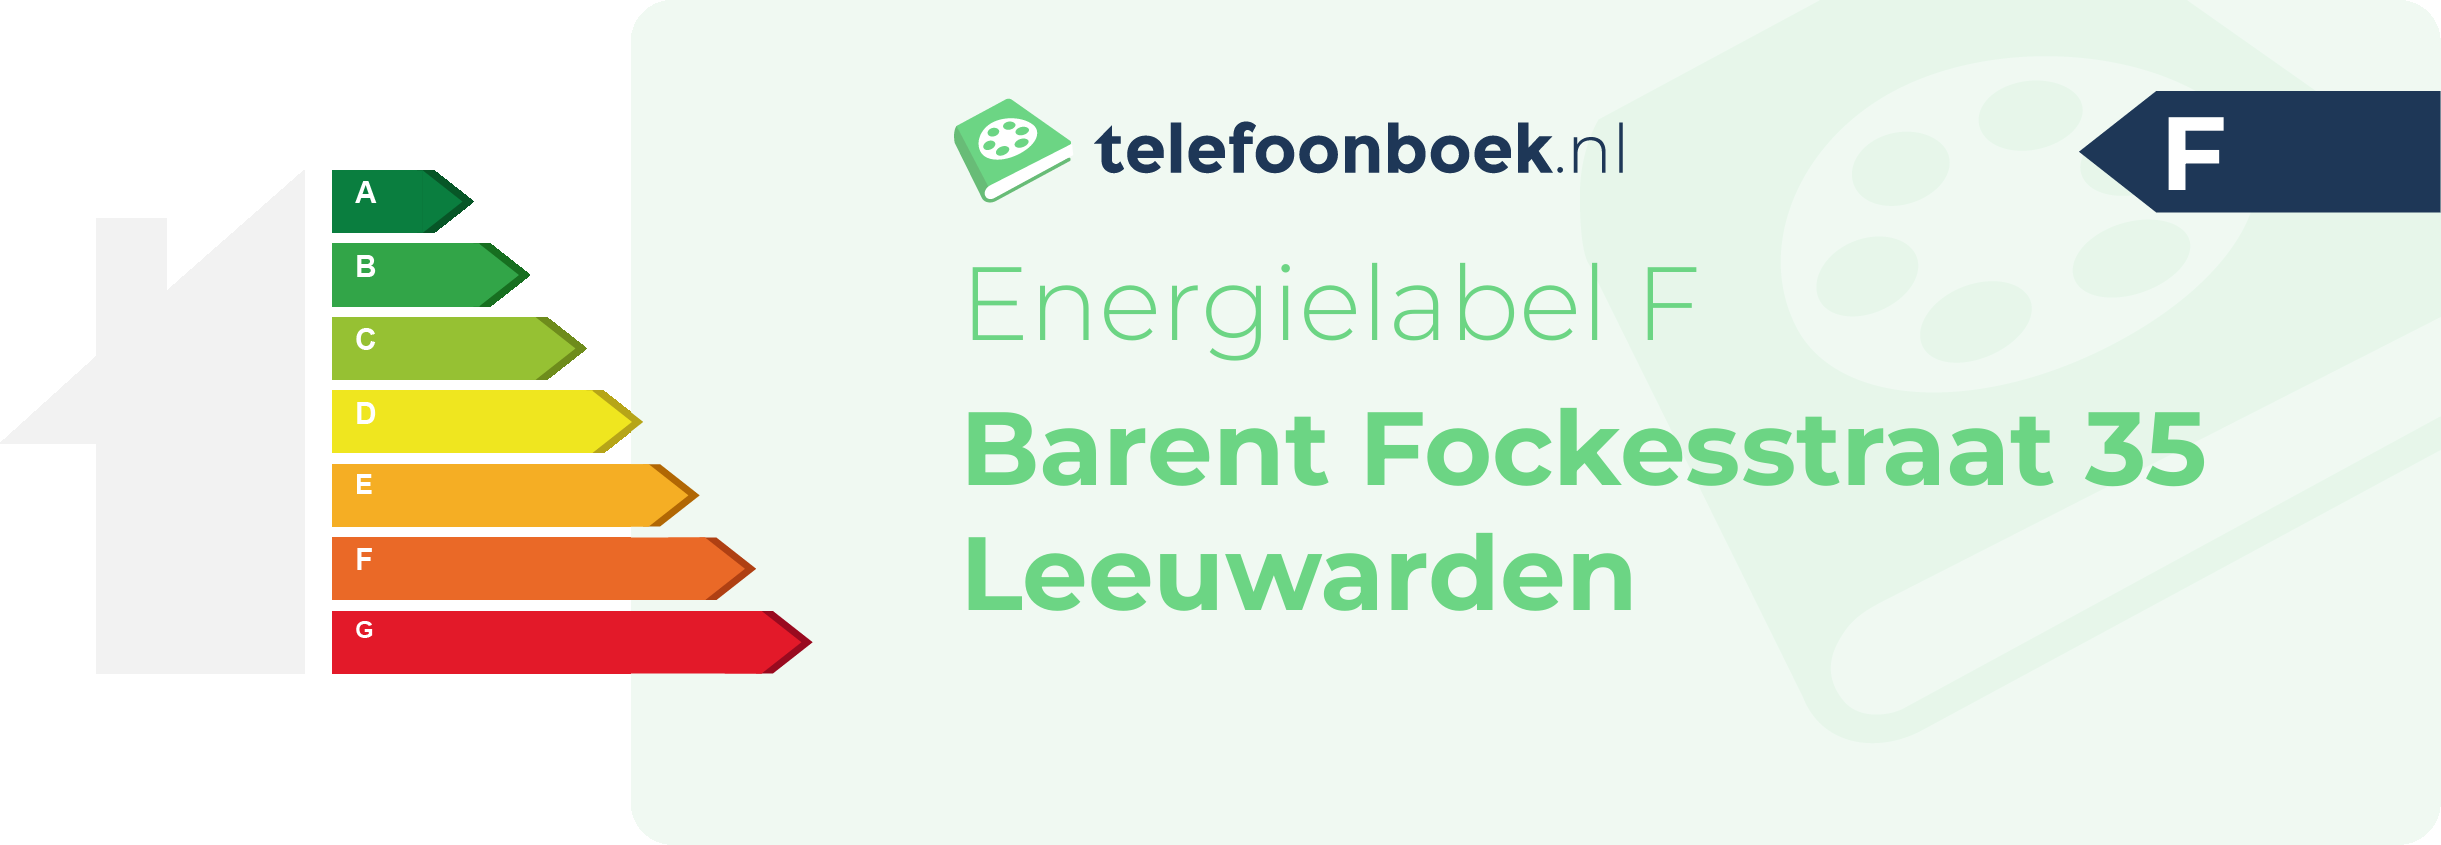 Energielabel Barent Fockesstraat 35 Leeuwarden